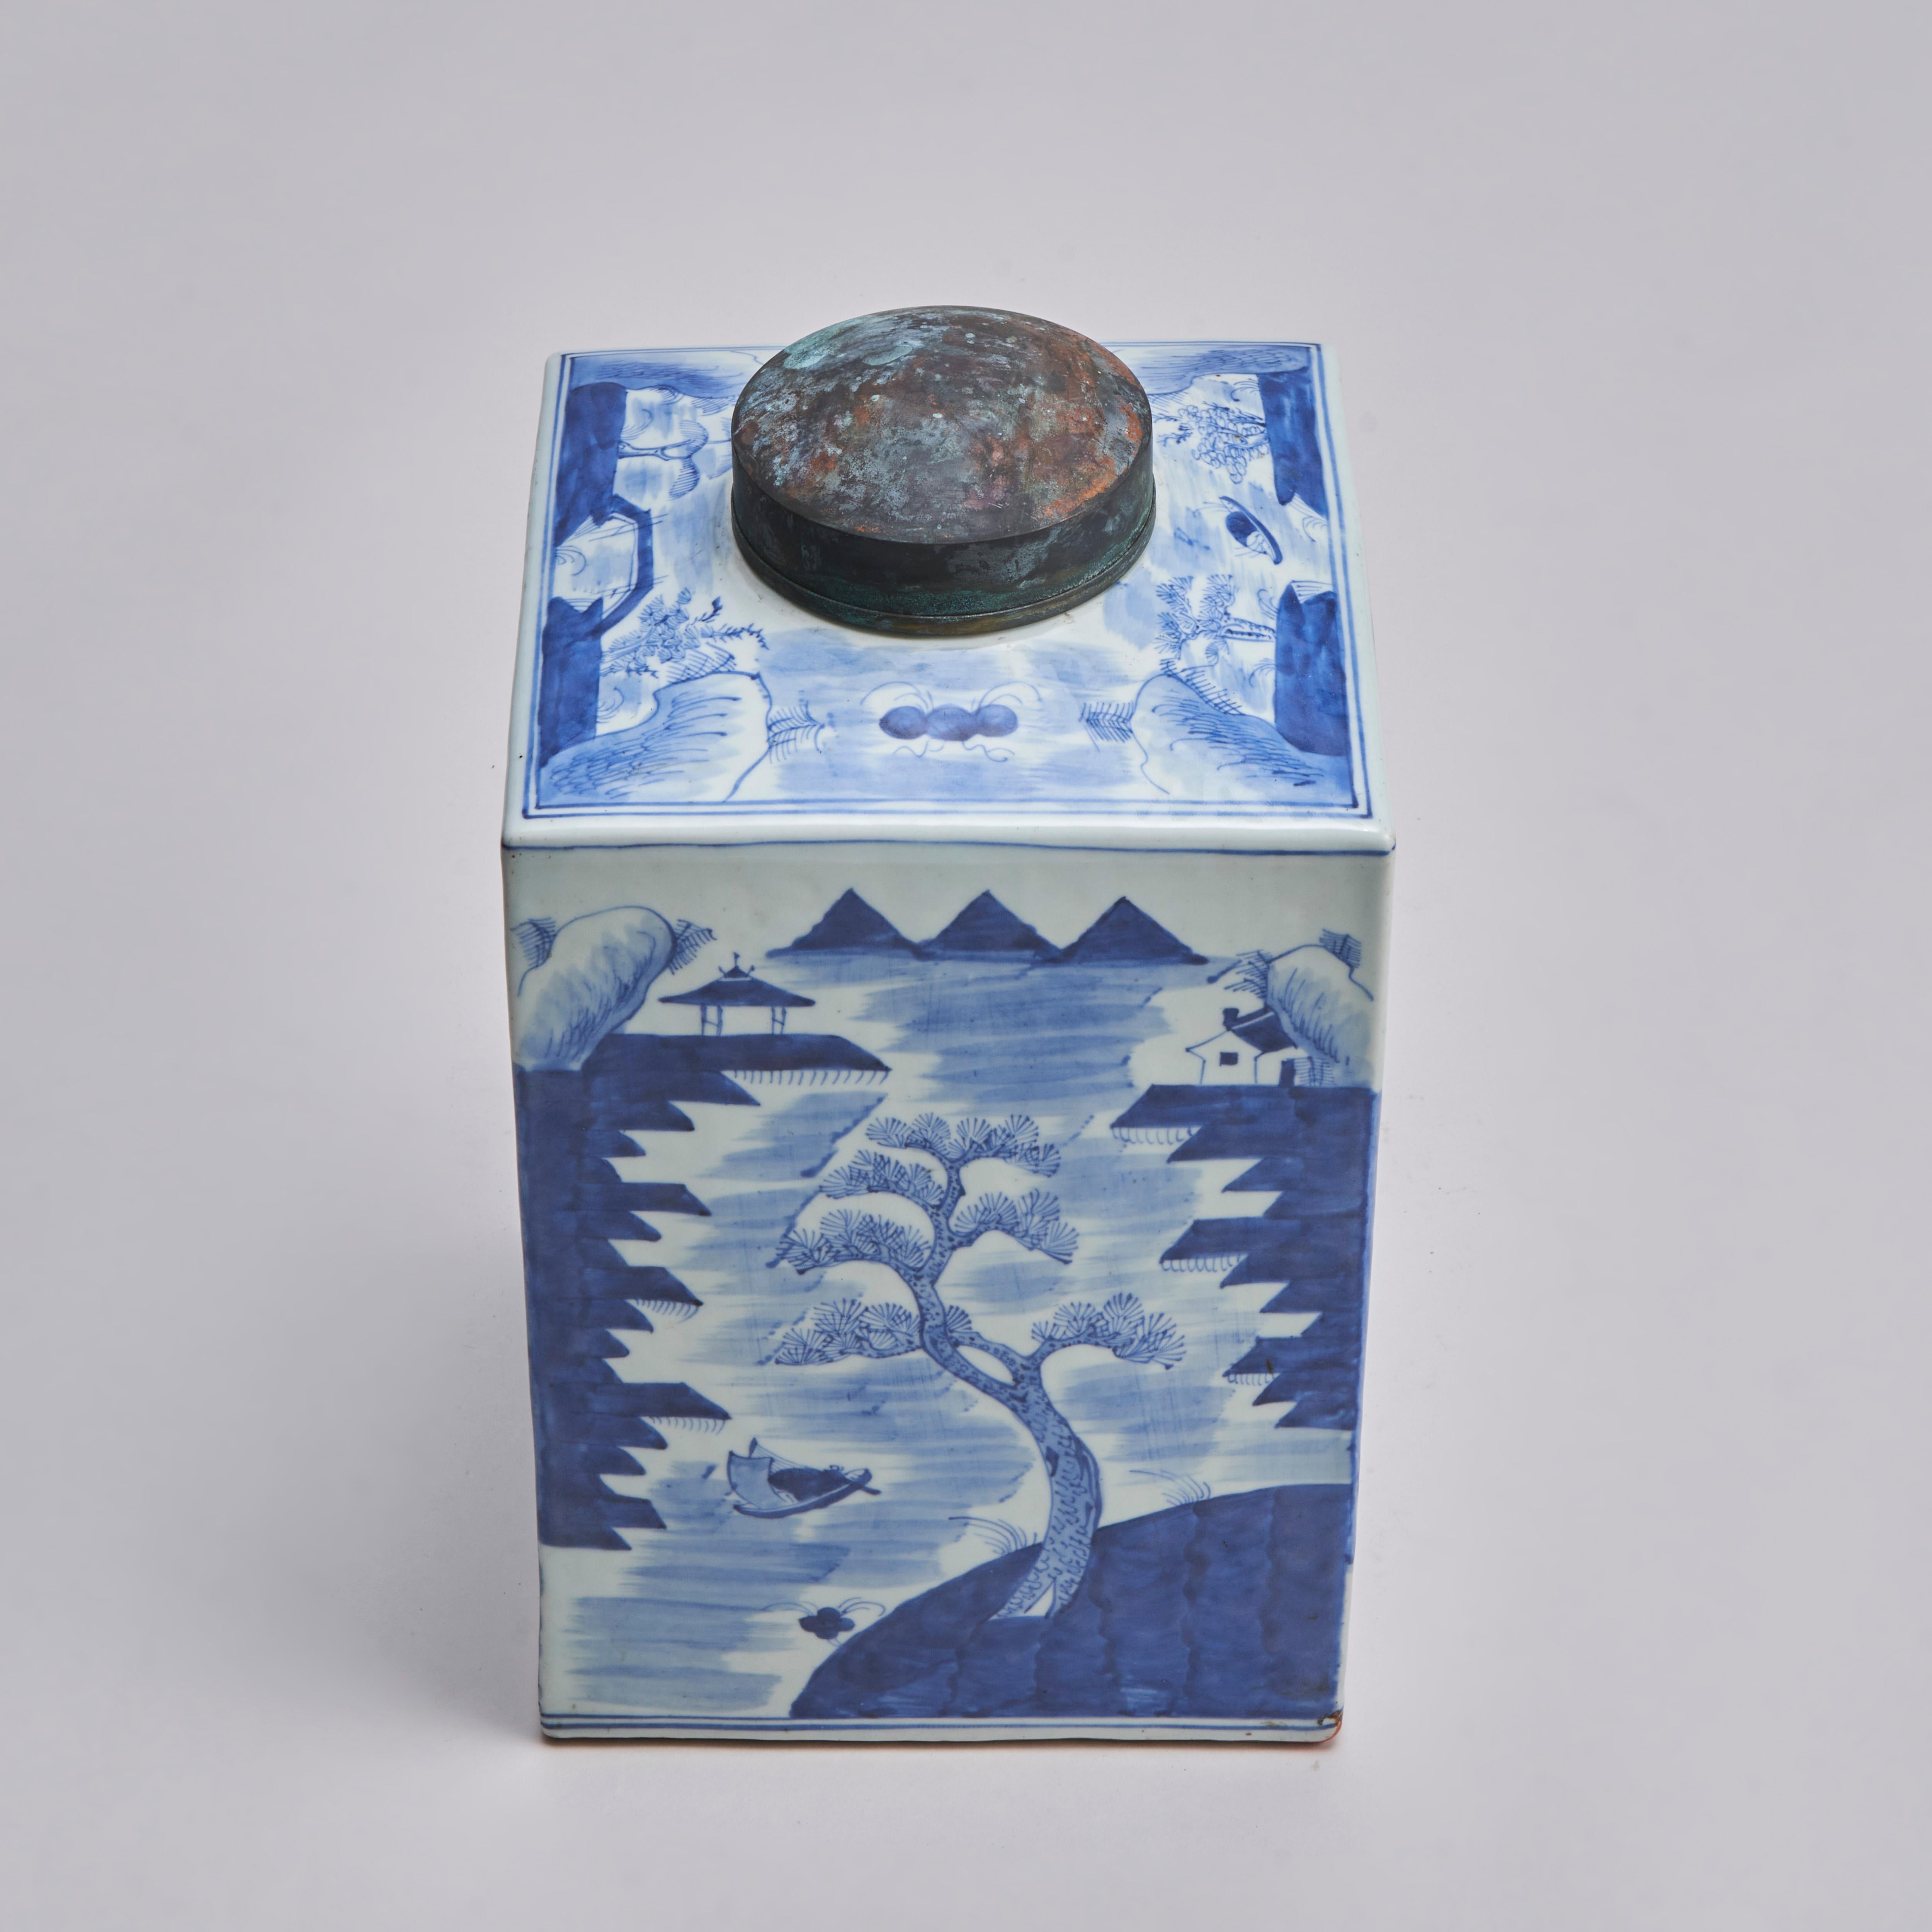 Aus unserer Sammlung antiker orientalischer Keramik: eine chinesische blau-weiße Teekanne aus dem frühen 19. Jahrhundert mit Metalldeckel, verziert mit dem klassischen Landschaftsmuster der Teekanne.

Kontaktieren Sie uns für weitere Informationen